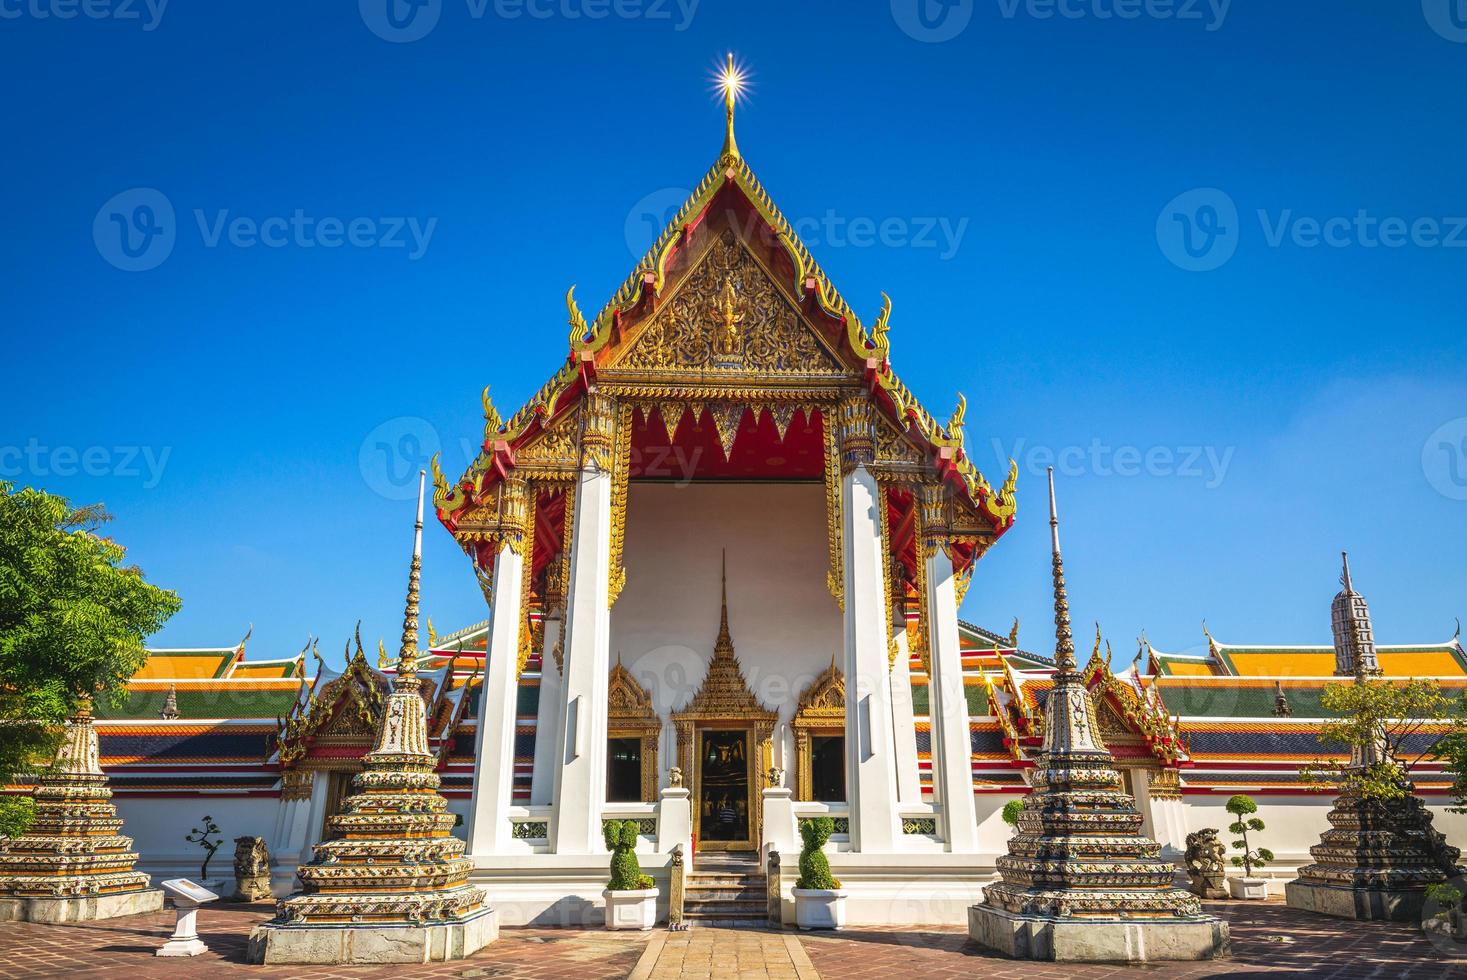 templo de Buda reclinado wat pho em bangkok, tailândia foto